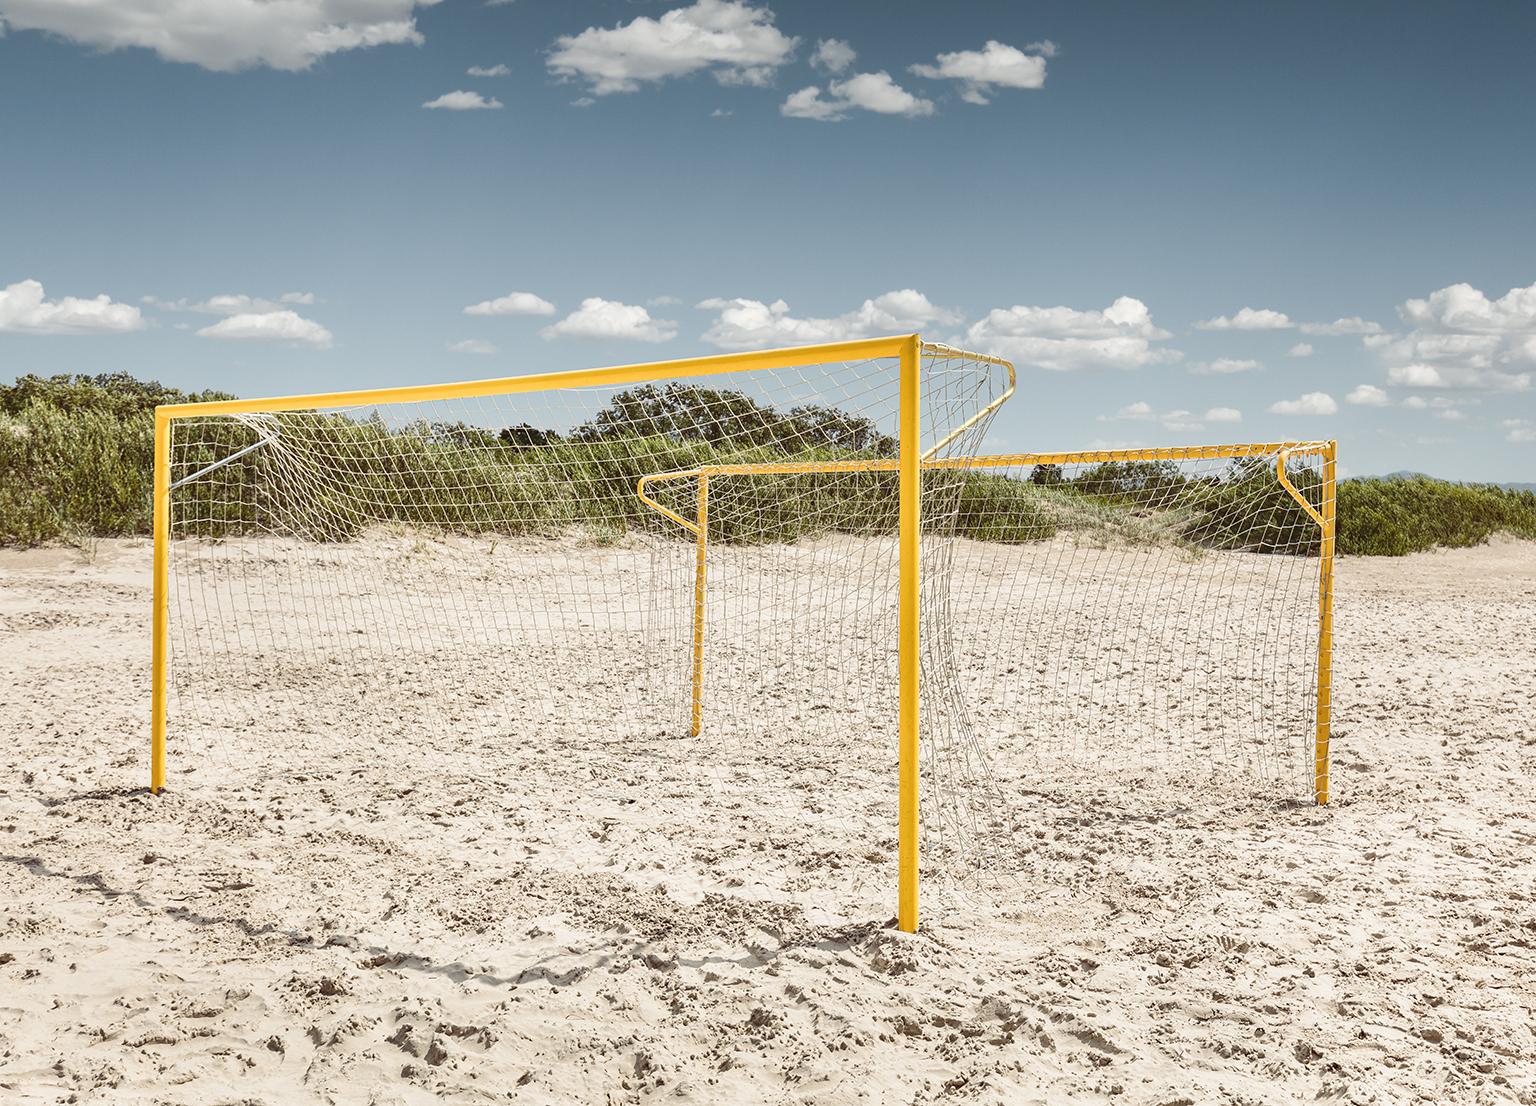 Erik Pawassar Color Photograph – Beach Goals – Großformatfotografie ikonischer gelber Fußball goals